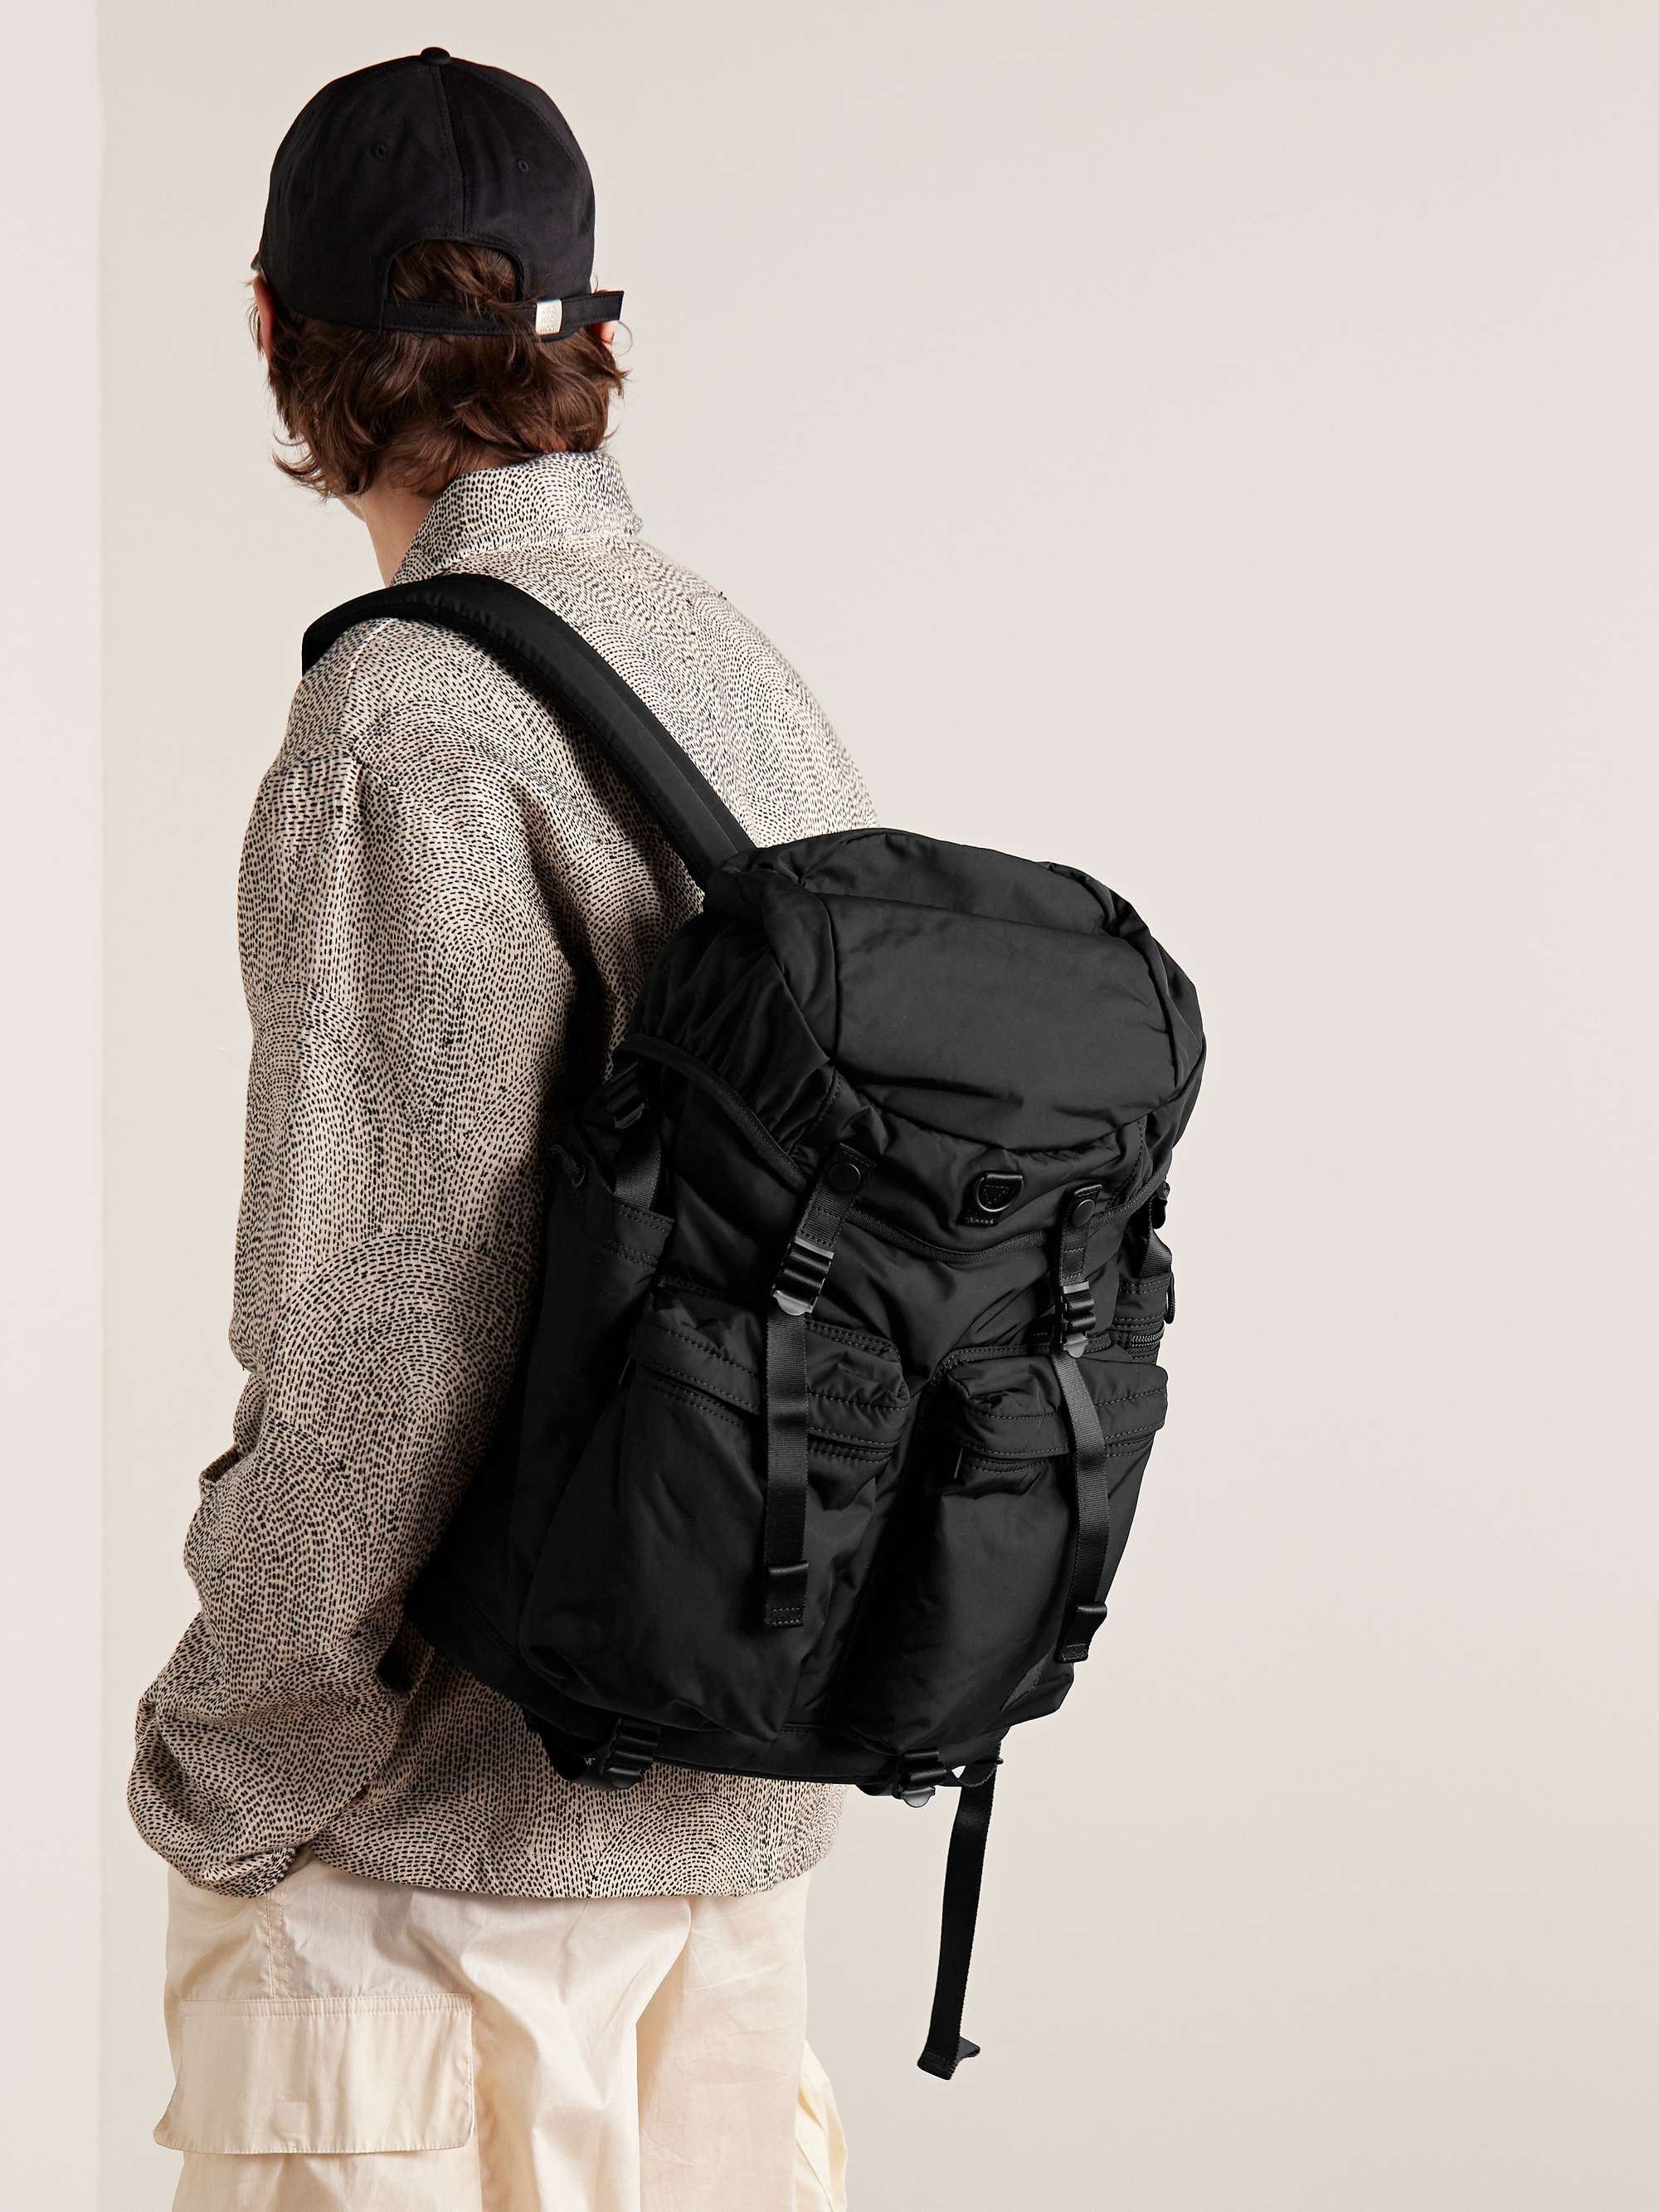 PORTER-YOSHIDA & CO Monogrammed Nylon Backpack for Men